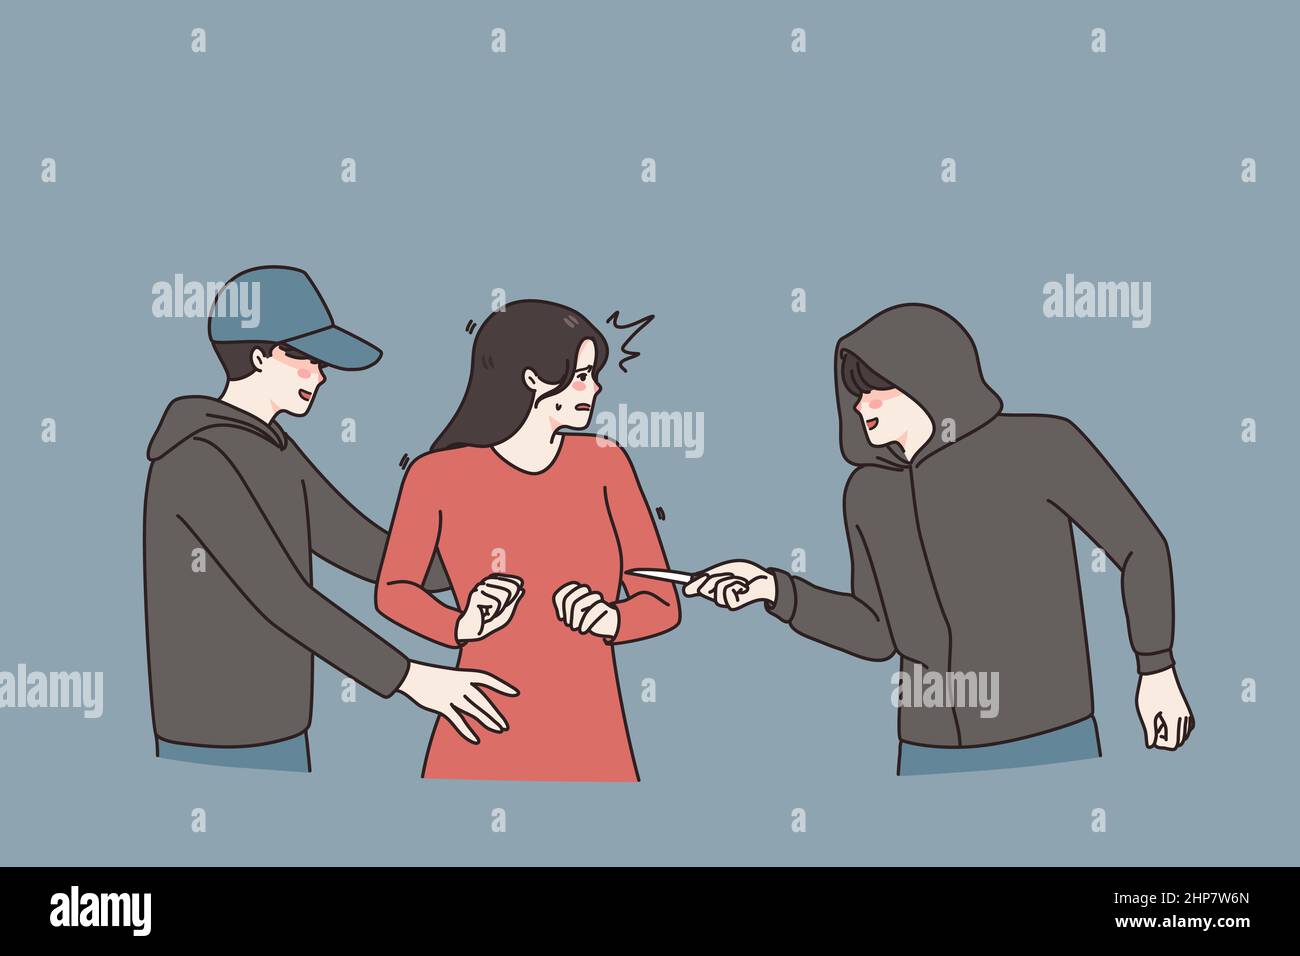 Les criminels masculins menacent les femmes dans la rue Illustration de Vecteur